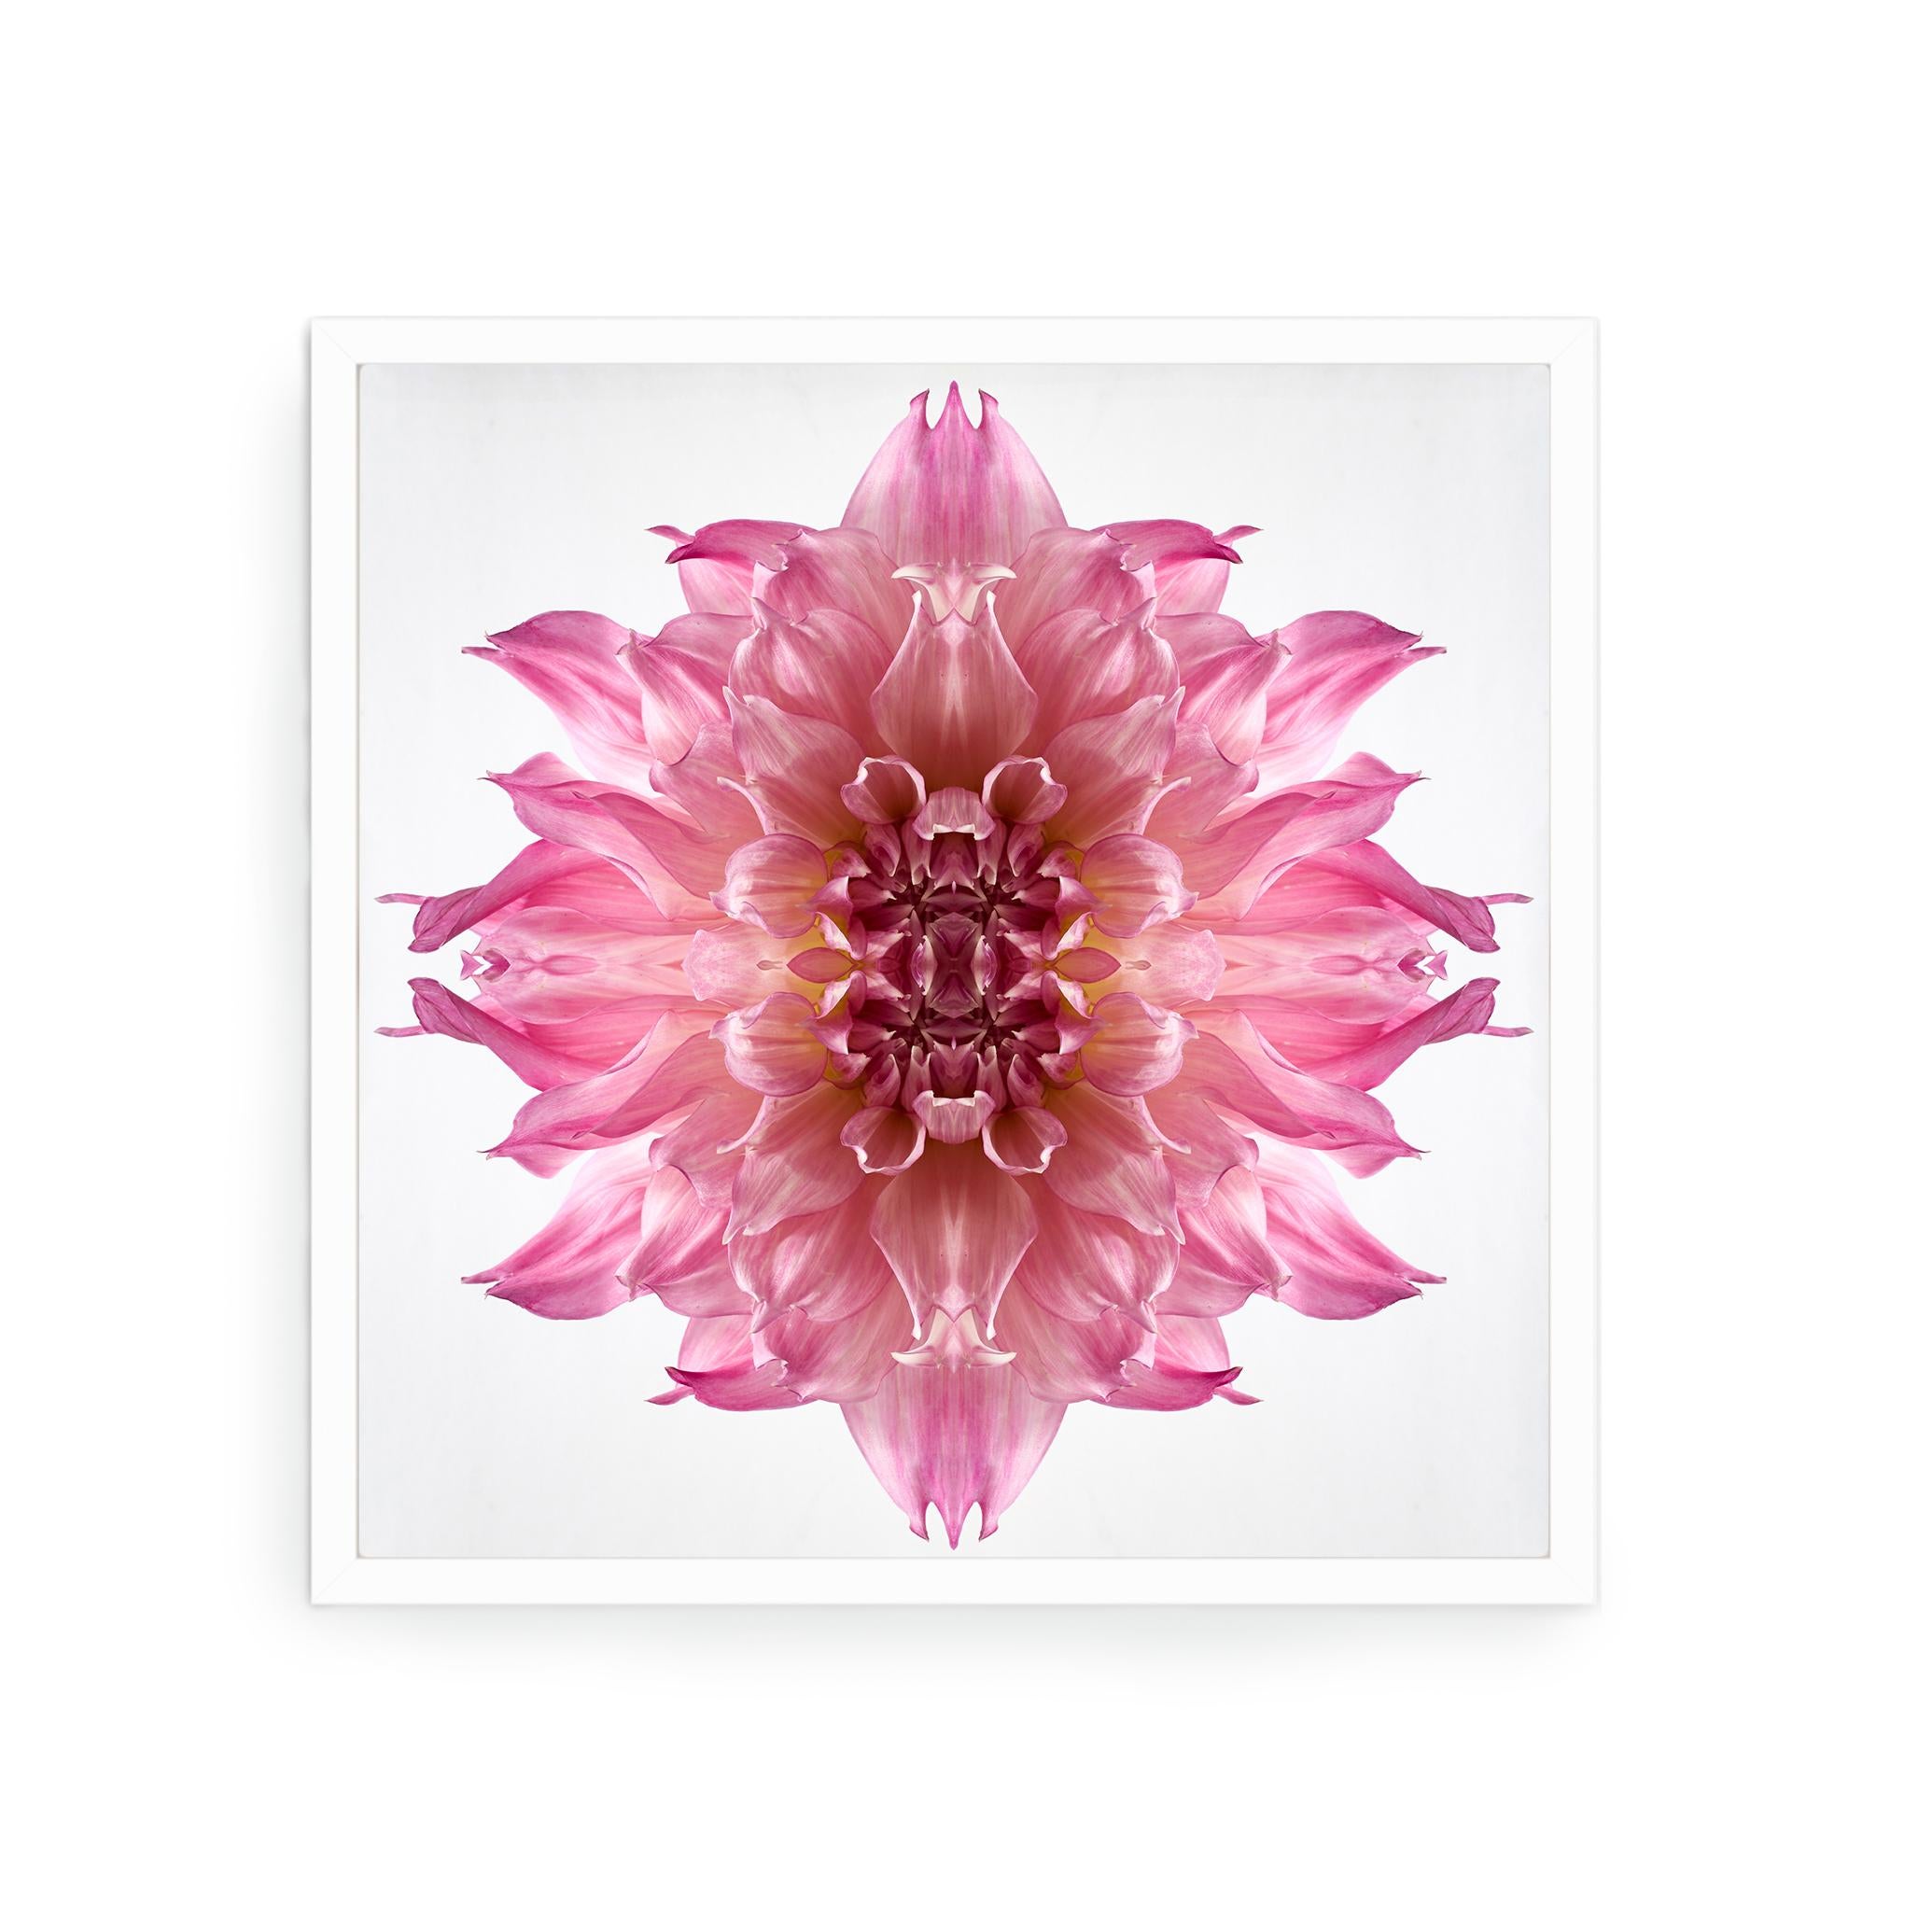 Dieser Druck zeigt die spielerische Beziehung zwischen natürlichen Formen und Pflanzen. In diesem Bild nutzt Erin die natürliche Komposition der rosa Dahlie und ihre eigene Collagearbeit, um mit der Blume ein hypnotisches Mandala zu schaffen. Manche